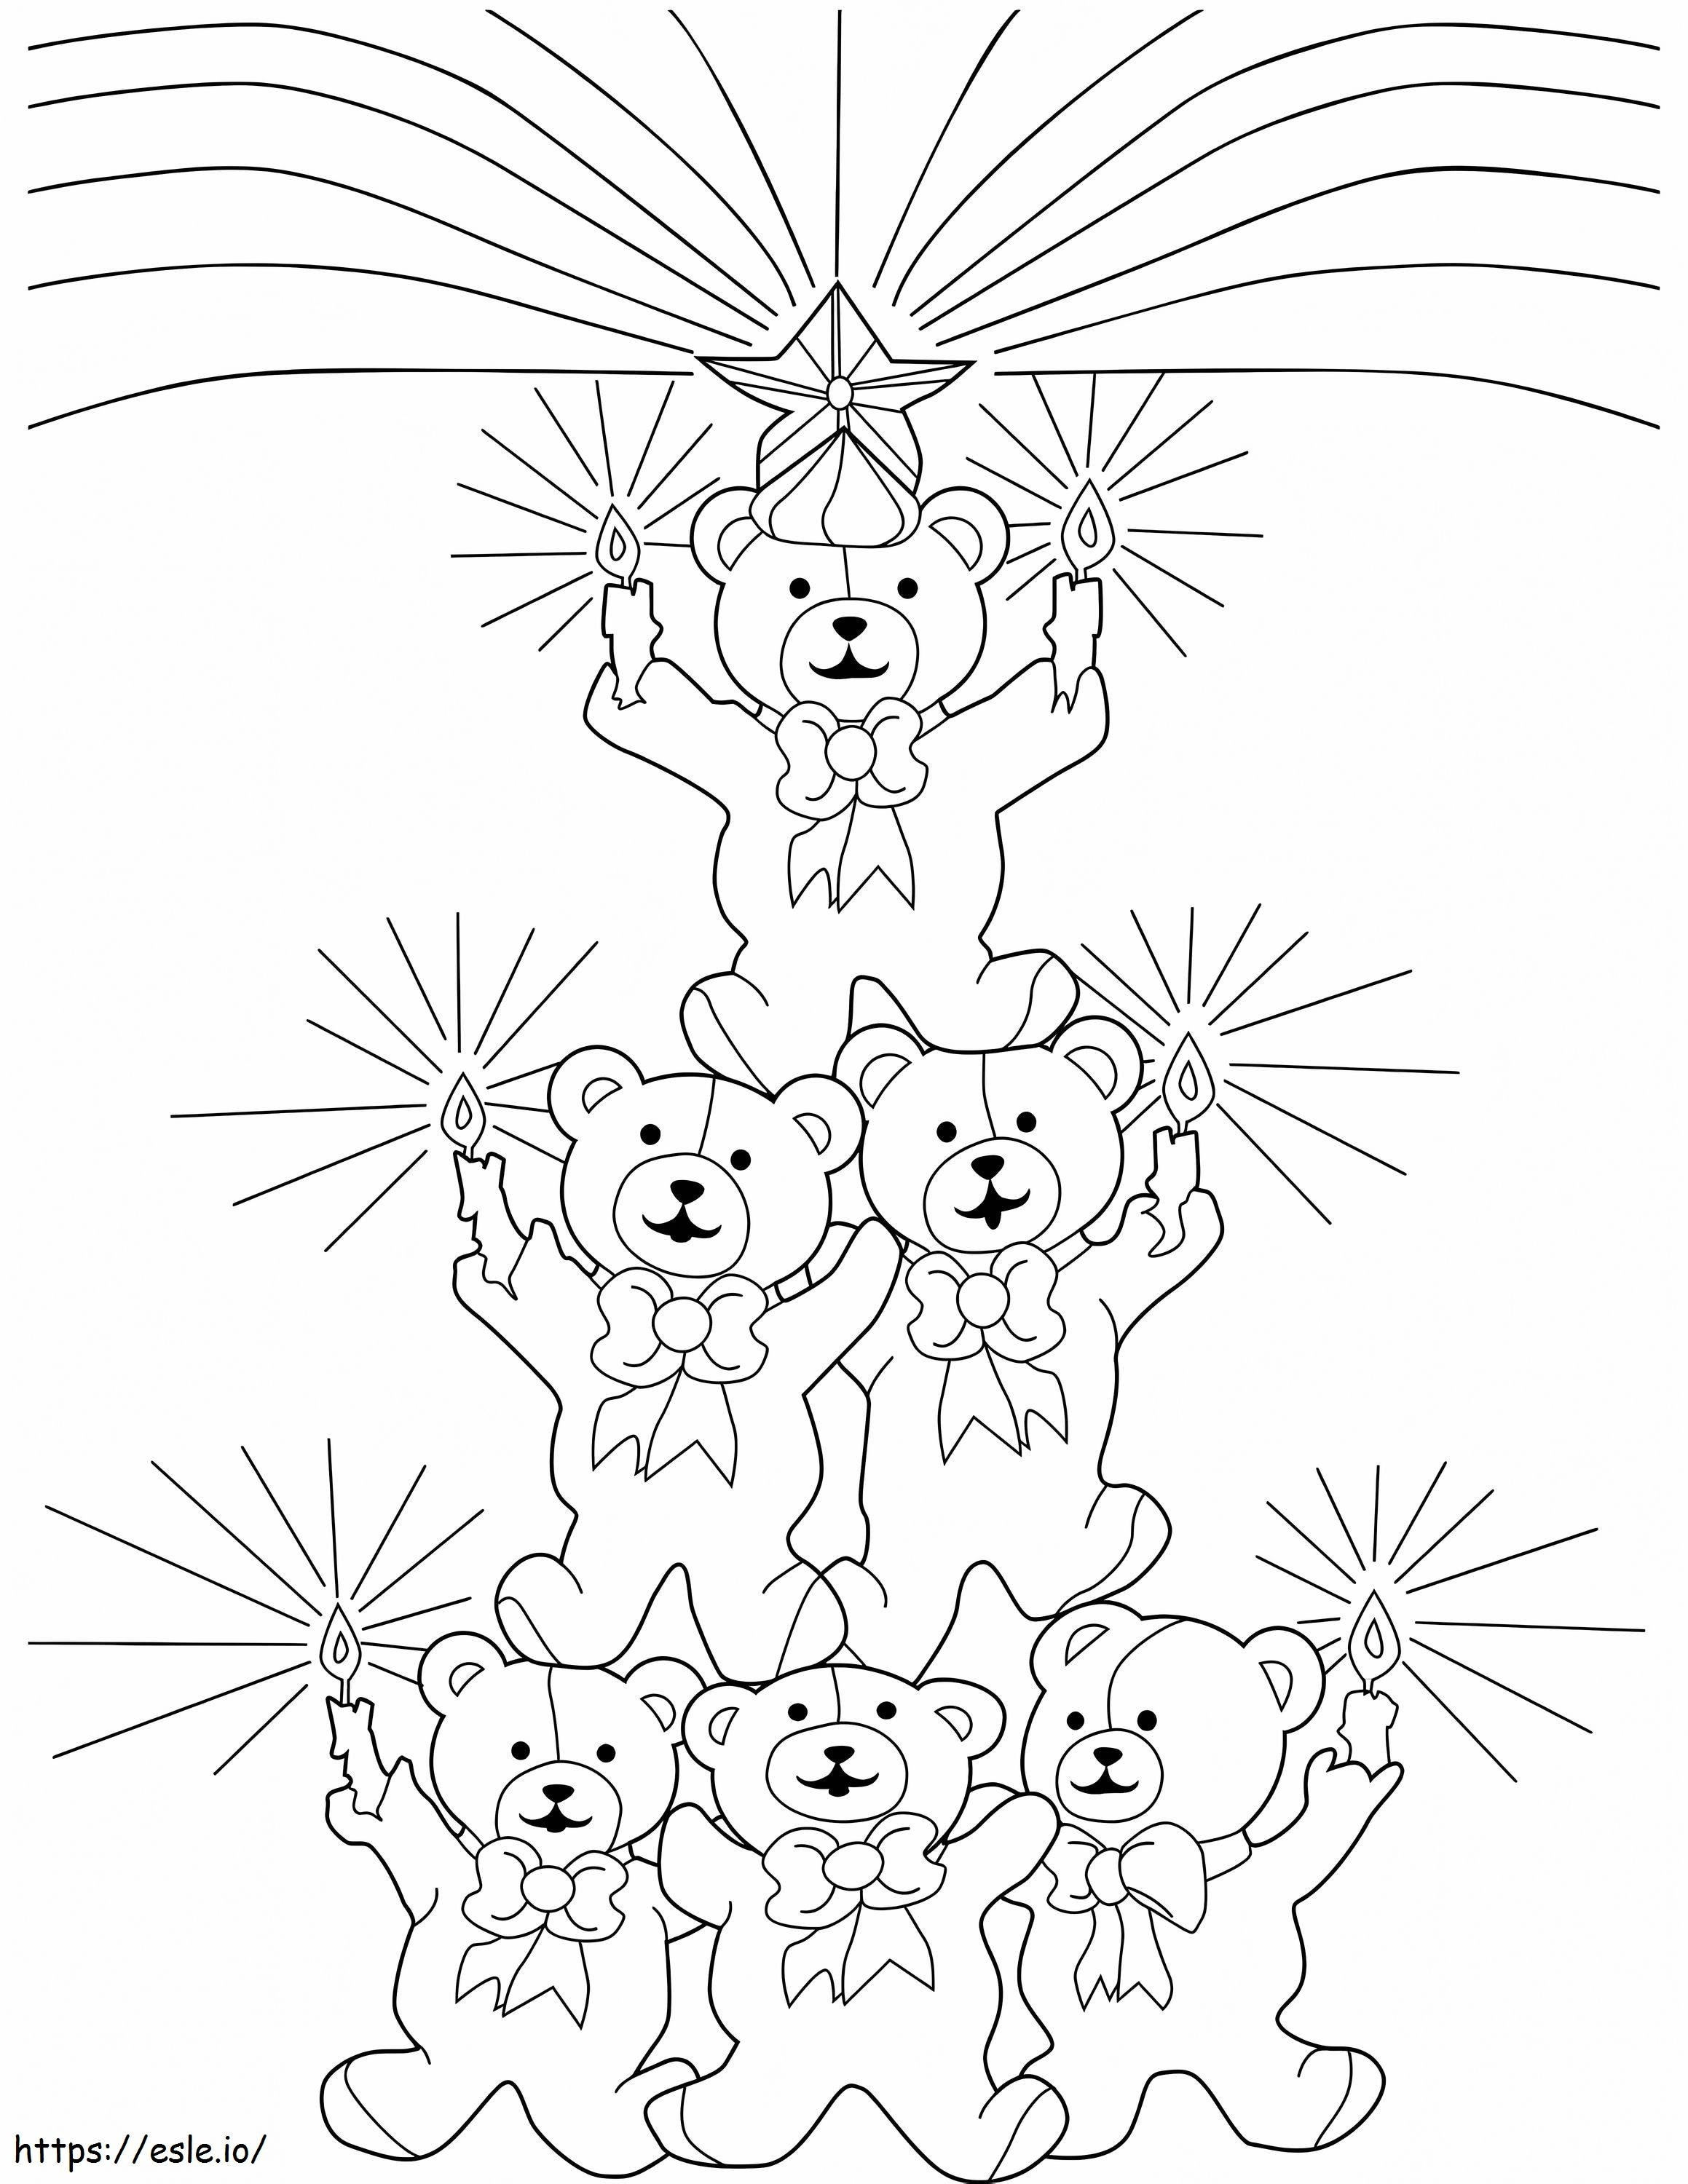 Weihnachtsbaum-Teddybären ausmalbilder